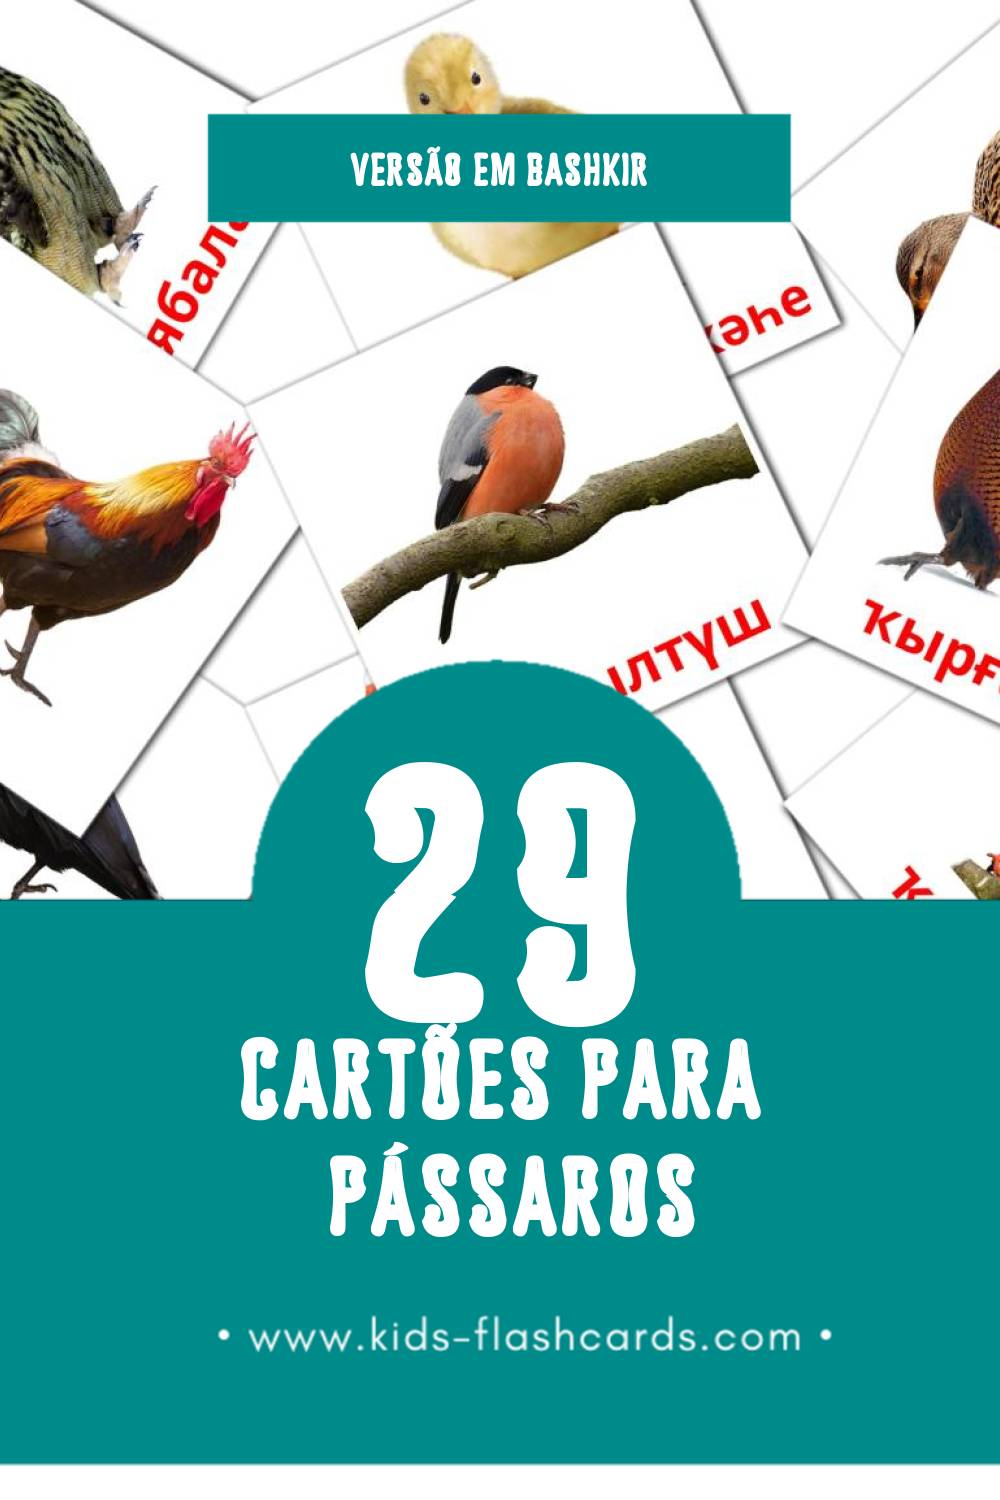 Flashcards de Ҡоштар Visuais para Toddlers (29 cartões em Bashkir)